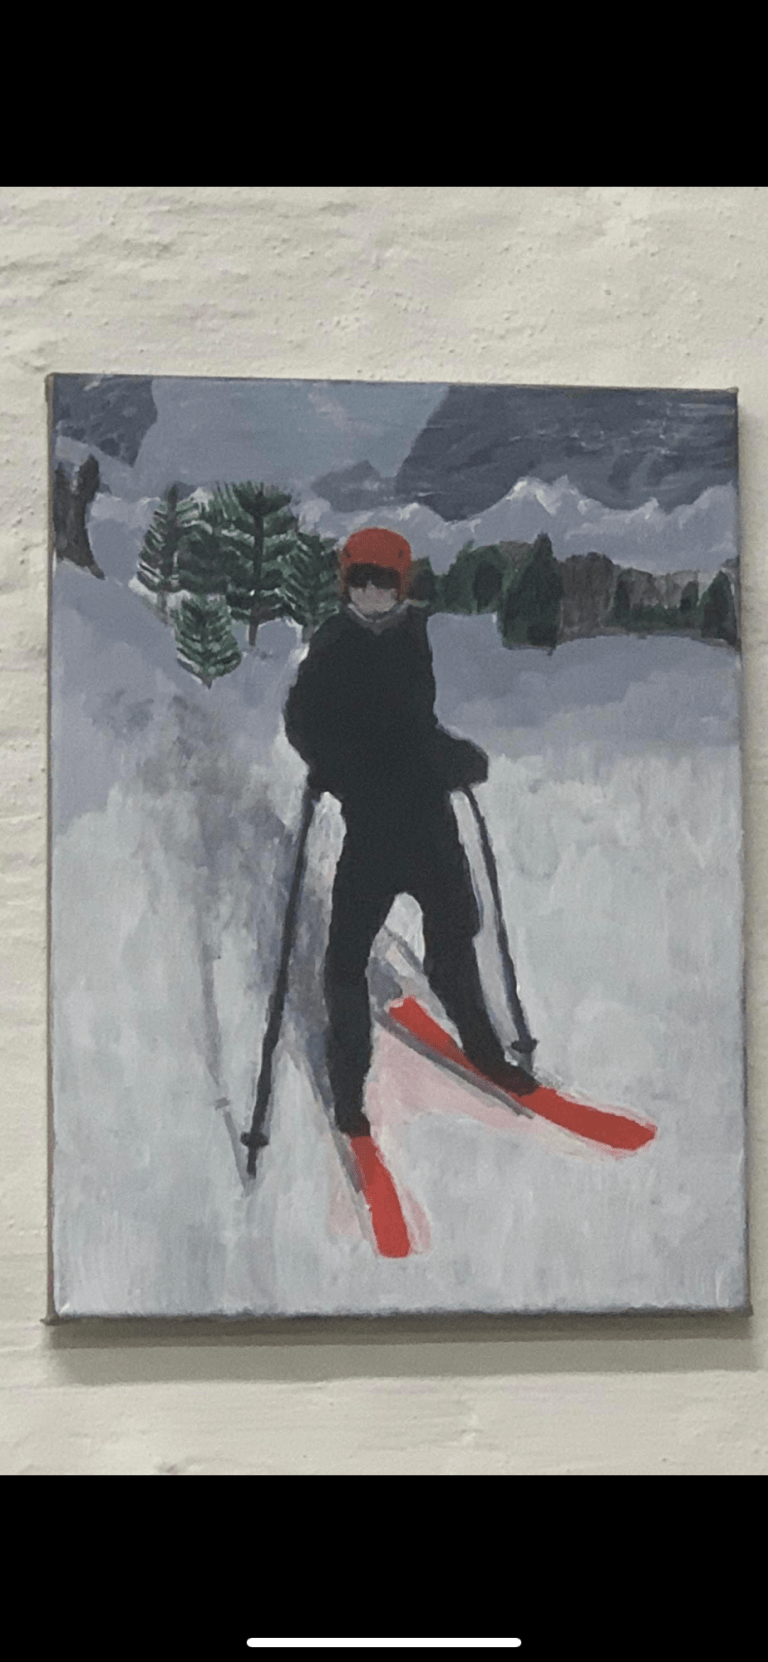 skiing and fun image